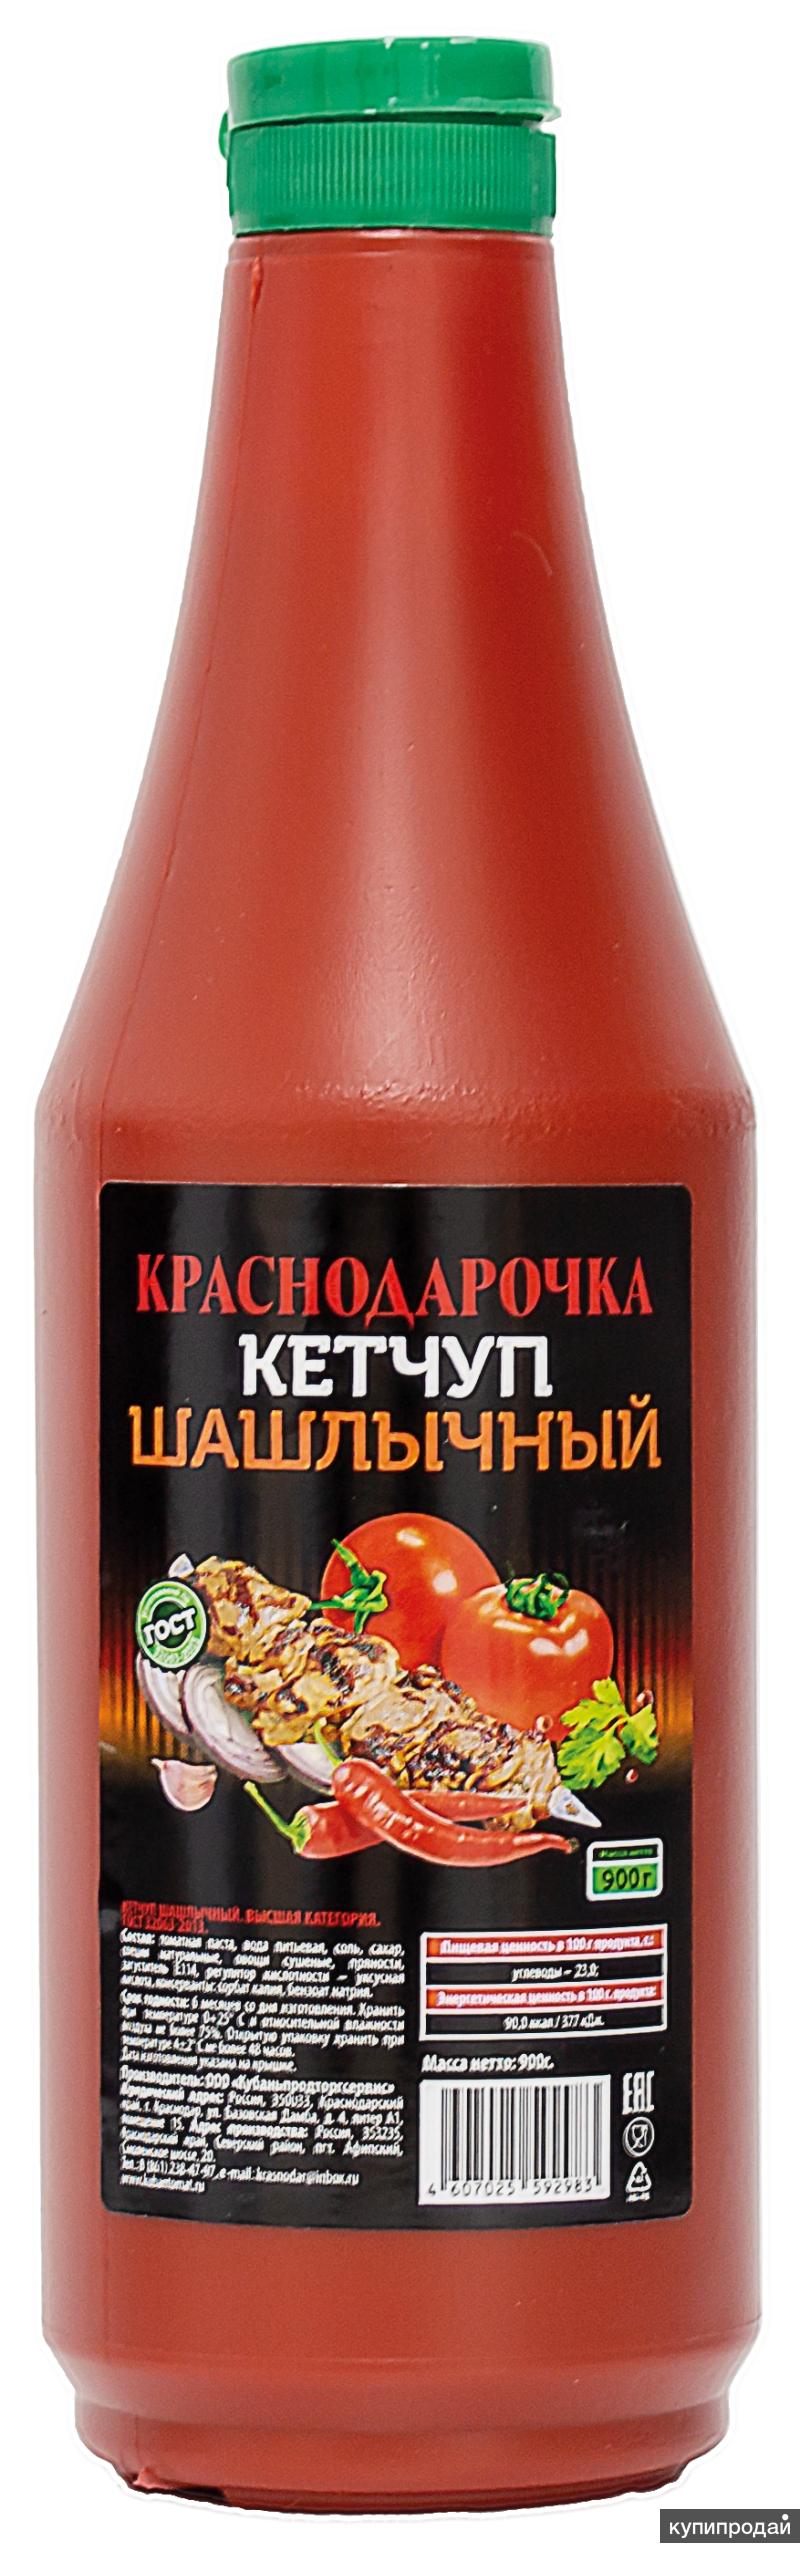 Кетчуп Шашлычный "Краснодарочка" ГОСТ. Пластик, 900г